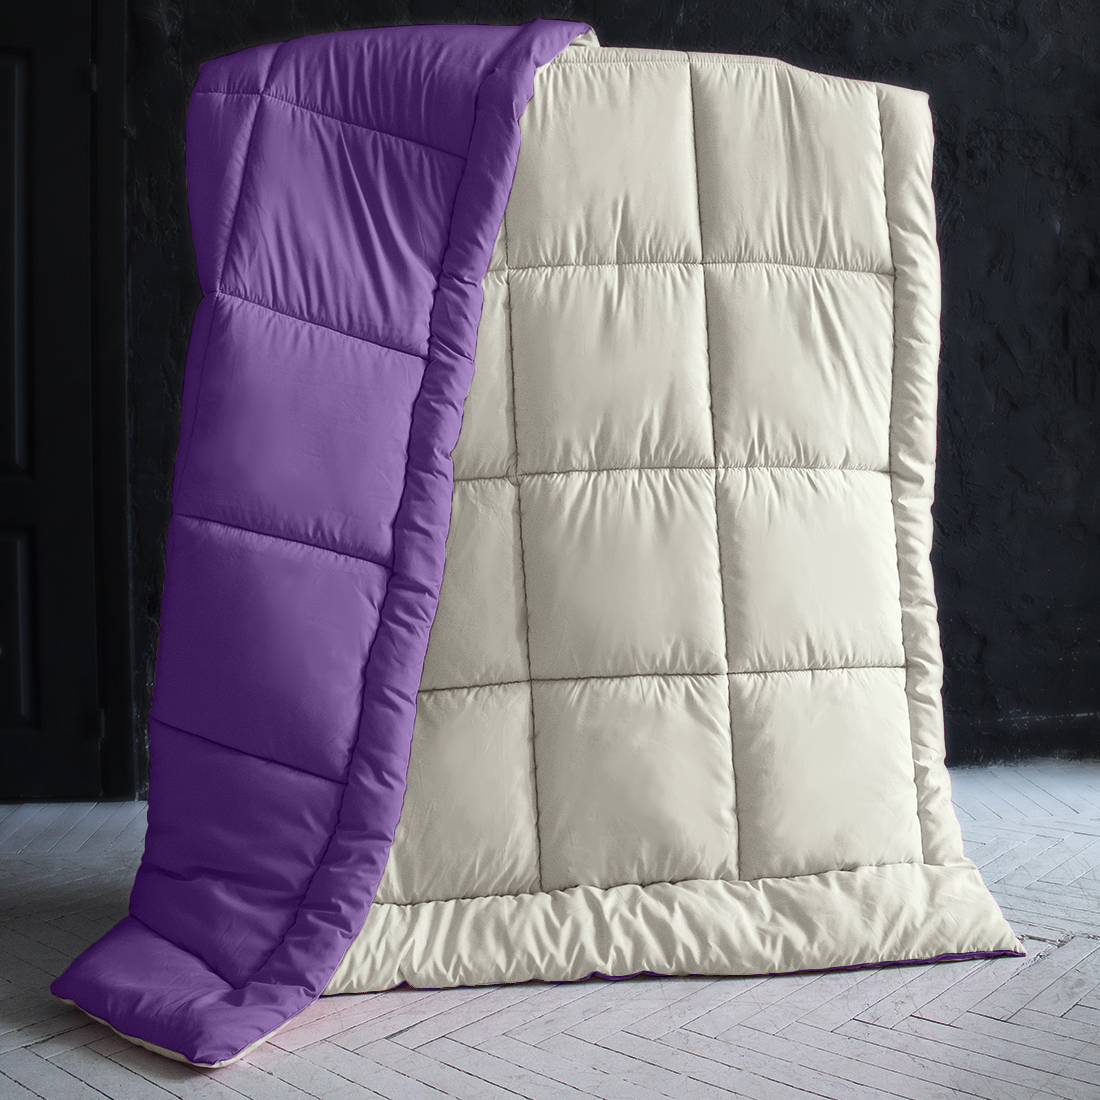 Одеяло MultiColor Цвет: Ванильный/Темно-Фиолетовый (175х205 см), размер 175х205 см pva410831 Одеяло MultiColor Цвет: Ванильный/Темно-Фиолетовый (175х205 см) - фото 1